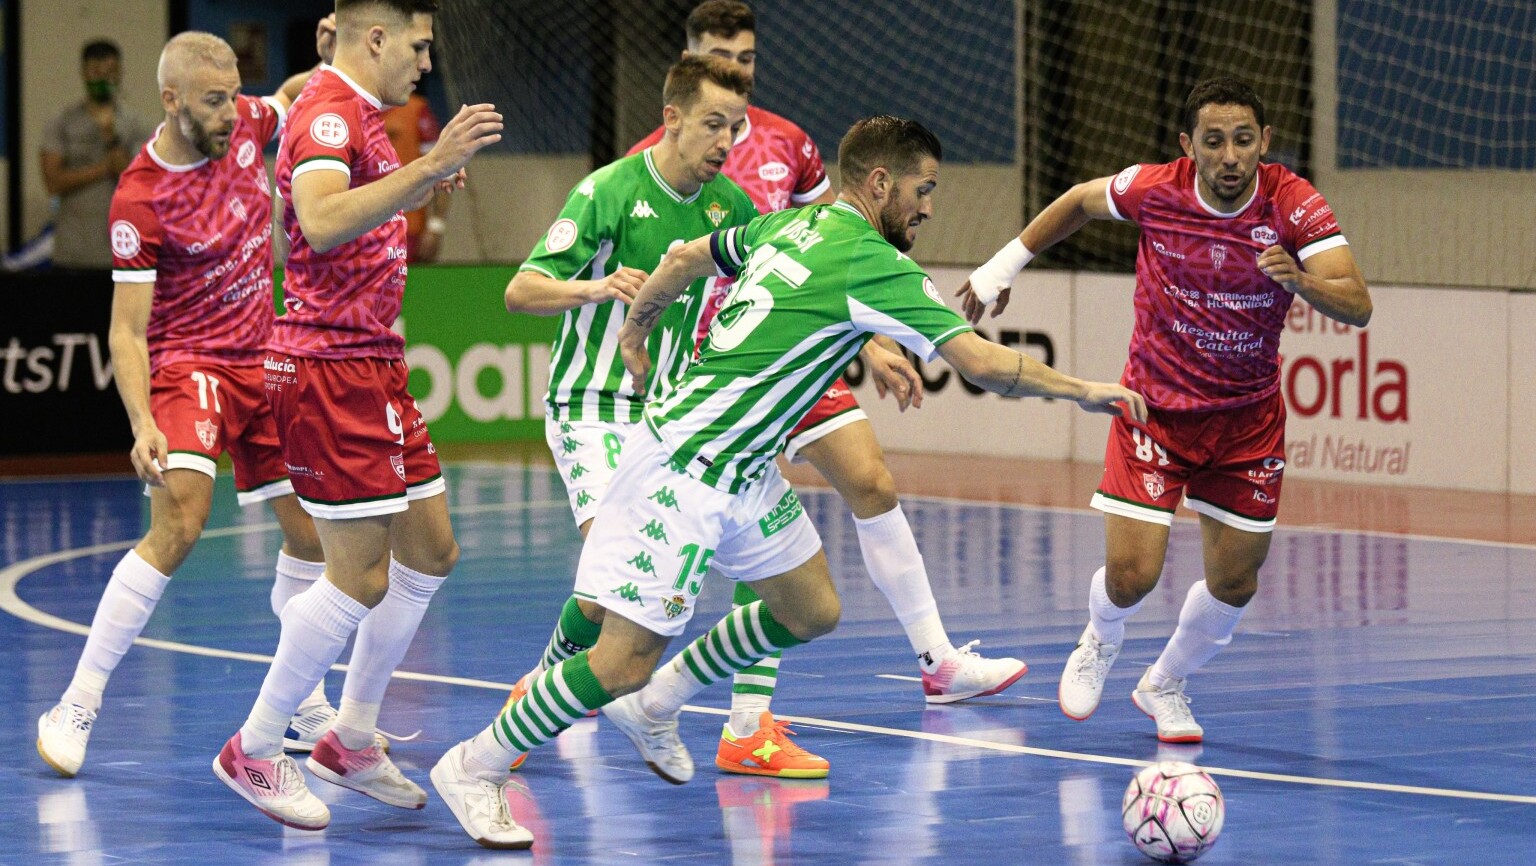 Rubén Cornejo, del Real Betis Futsal, busca opción de disparo ante la defensa del Córdoba Patrimonio